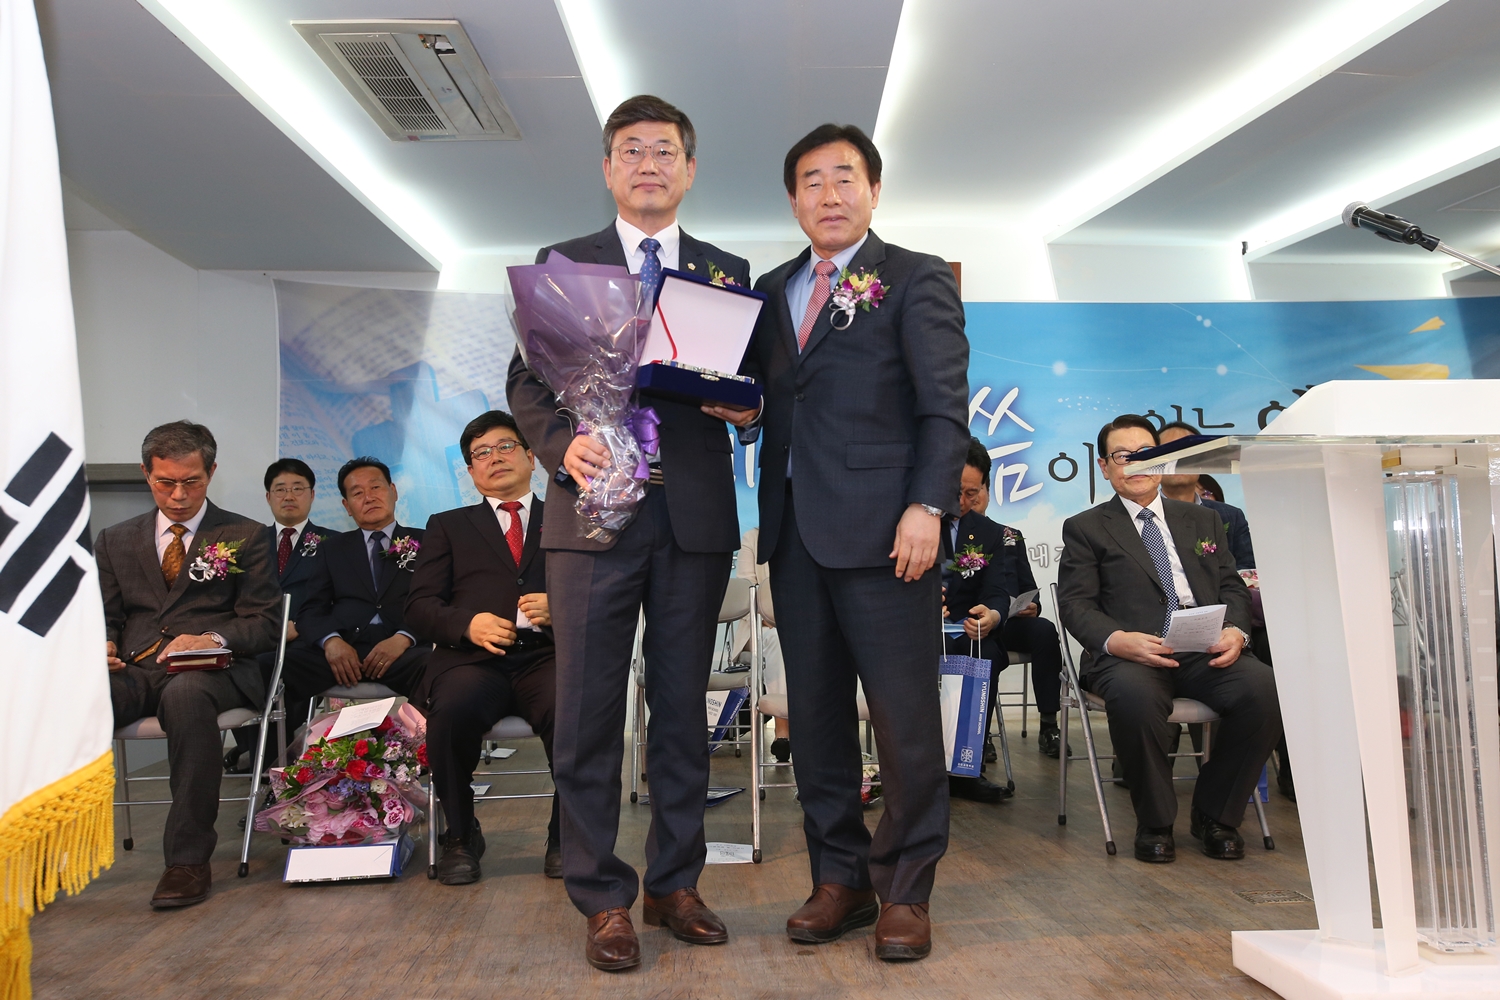  경신중·고등학교 발전에 기여한 공로 인정받아 감사패 수상, 전영준 의원(새창)